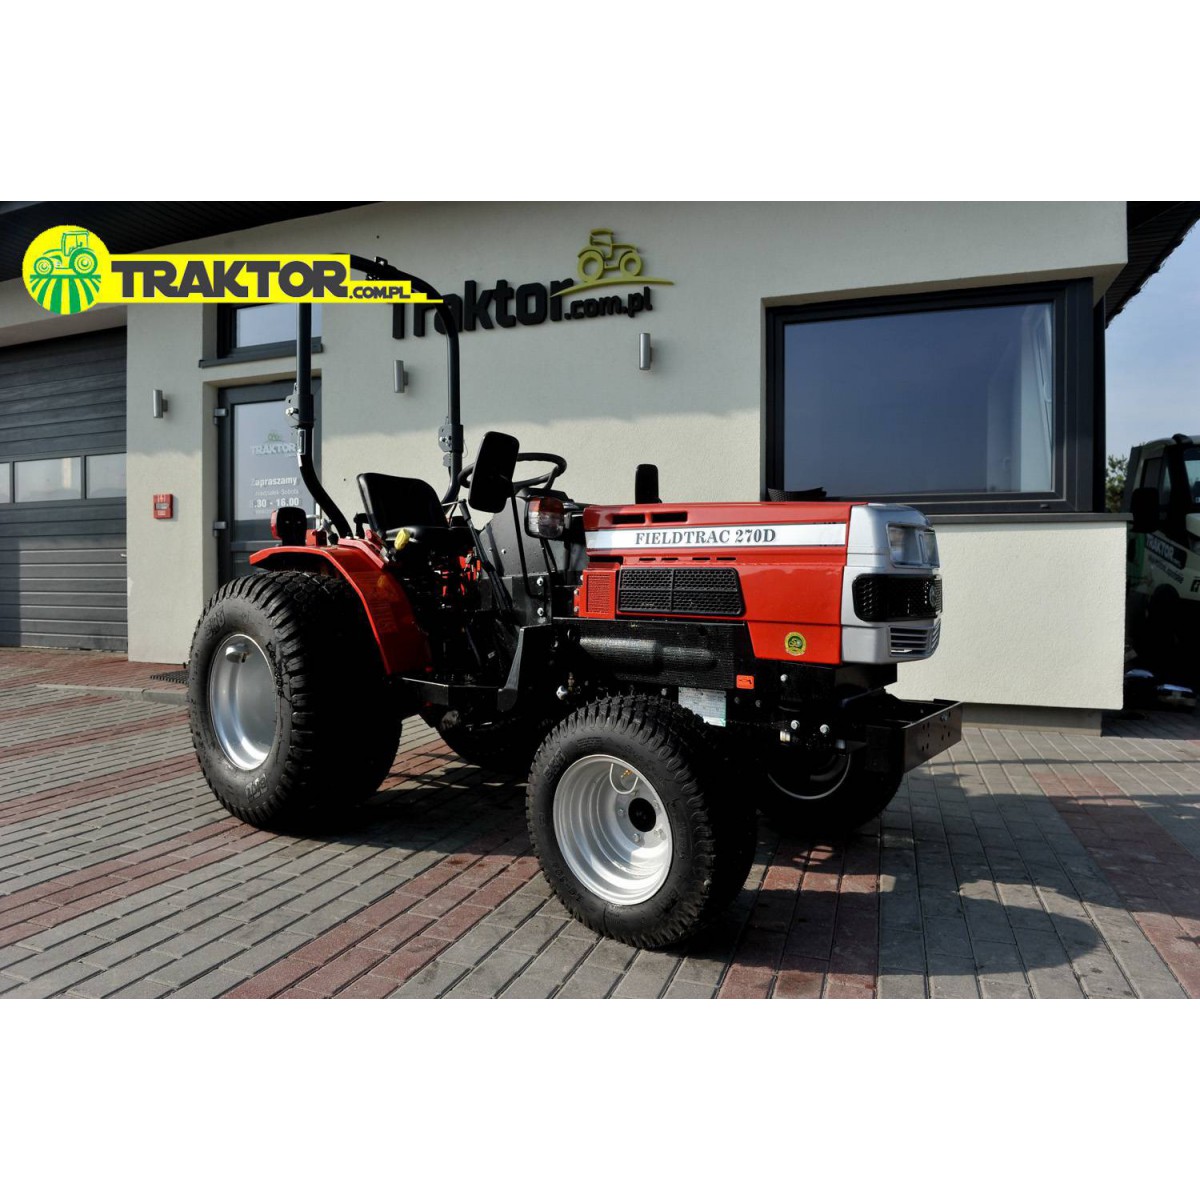 FIELDTRAC 270D POWER PLUS Traktoren Prospekt 129 